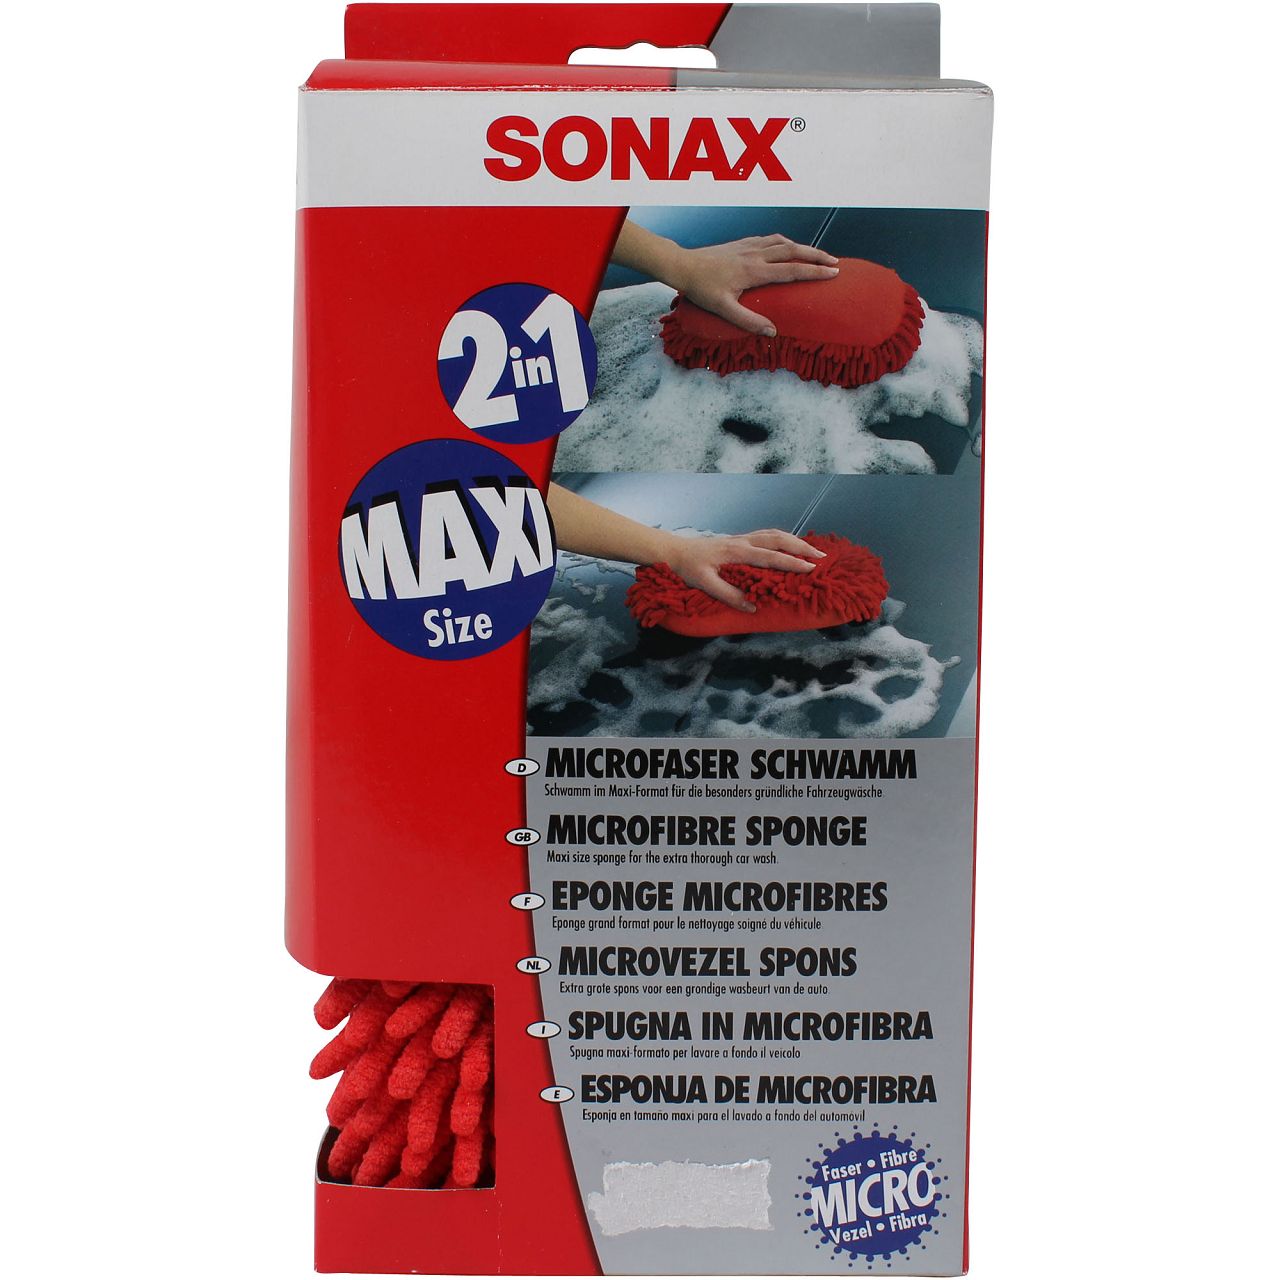 SONAX Microfaser Multischwamm Schwamm Maxi Size 2in1 1 Stück 428100